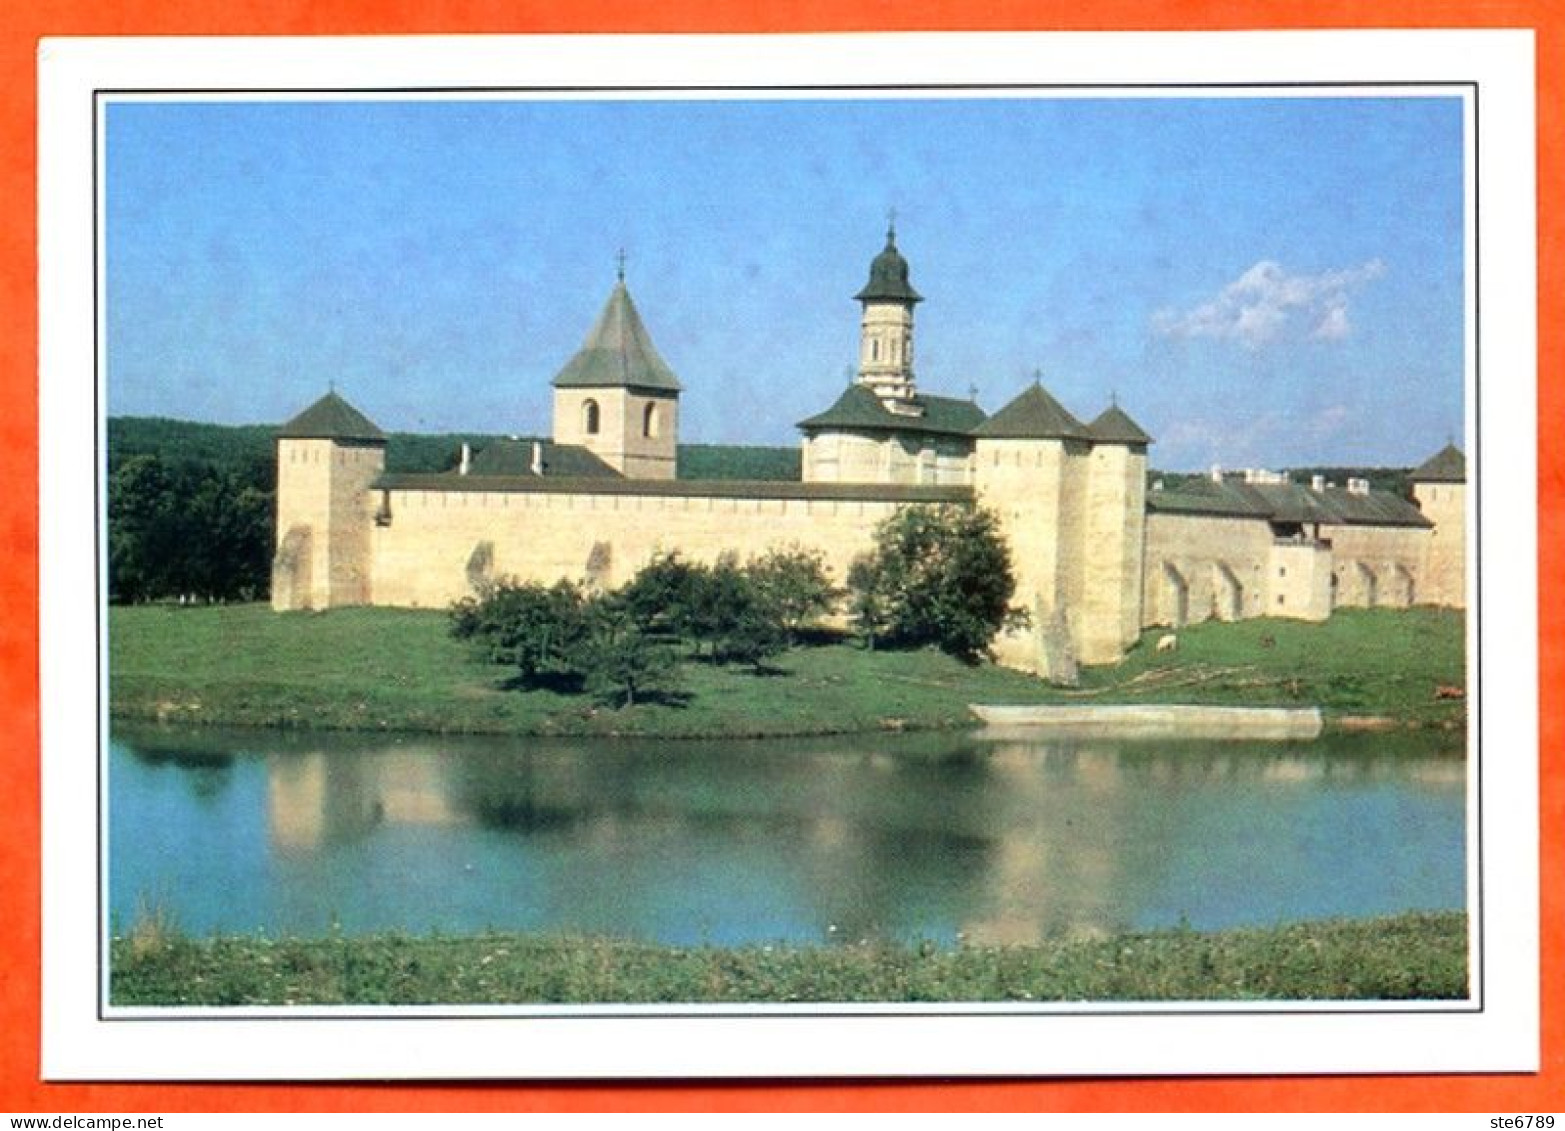 ROUMANIE RUMANIA  Moldavie Le Chateau De Dragomirna - Géographie